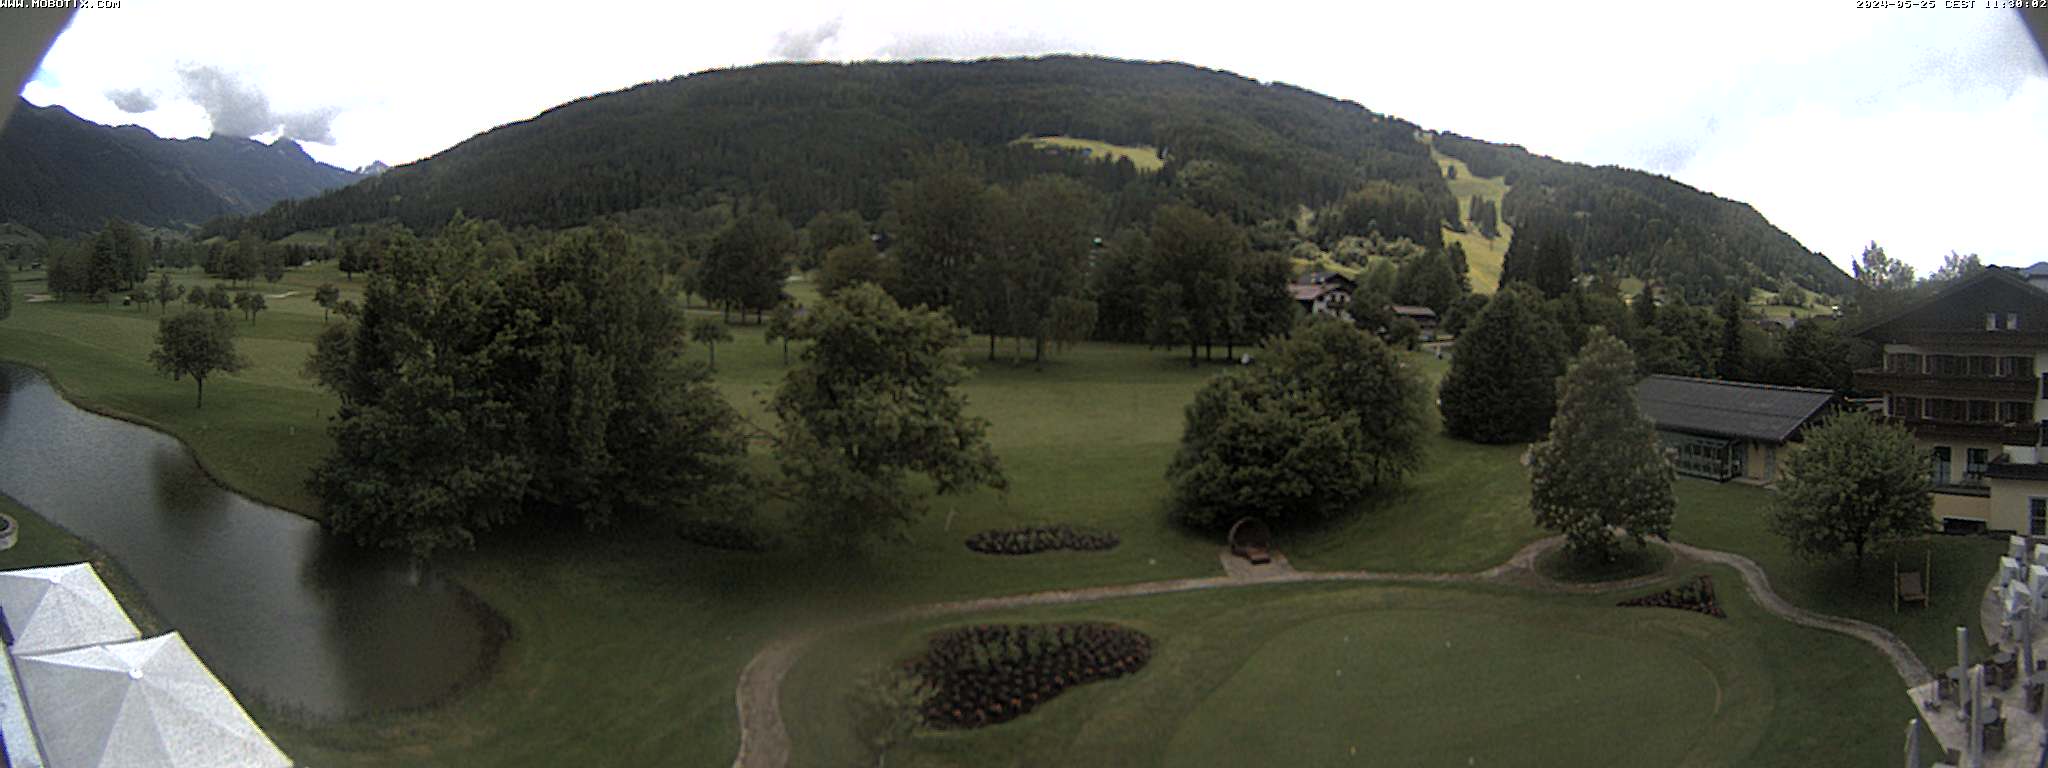 Webcam Weissenhof